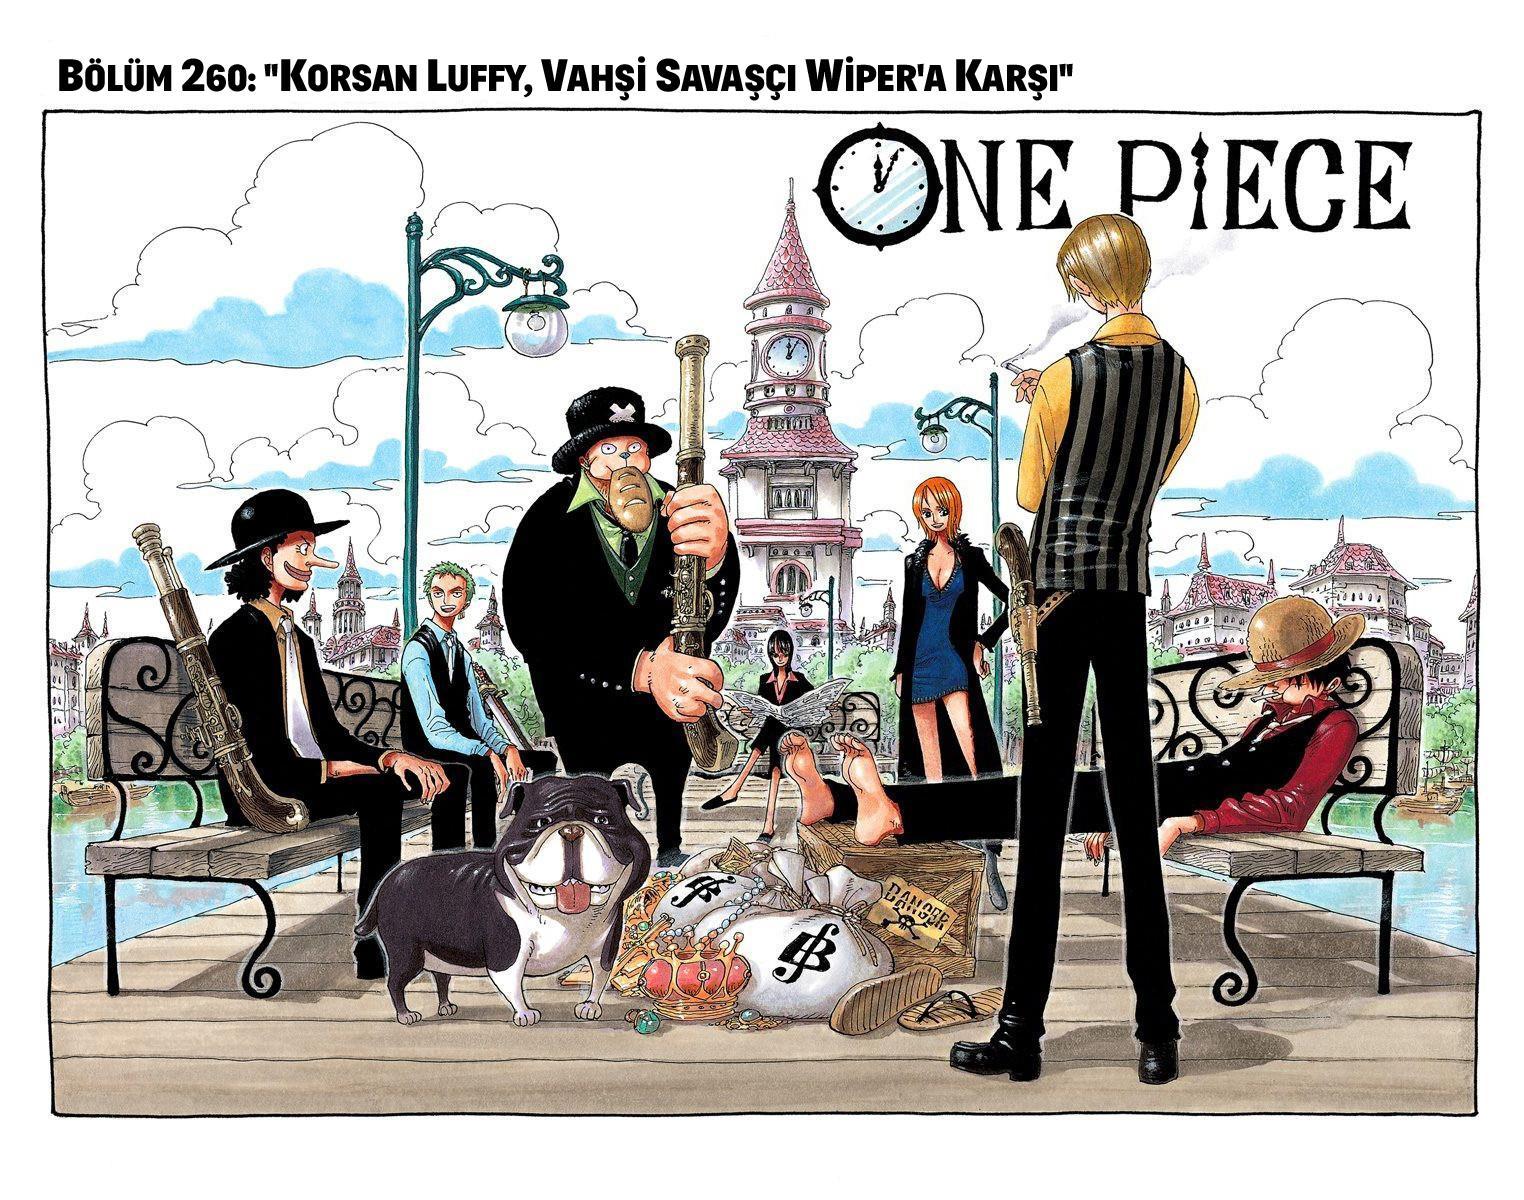 One Piece [Renkli] mangasının 0260 bölümünün 2. sayfasını okuyorsunuz.